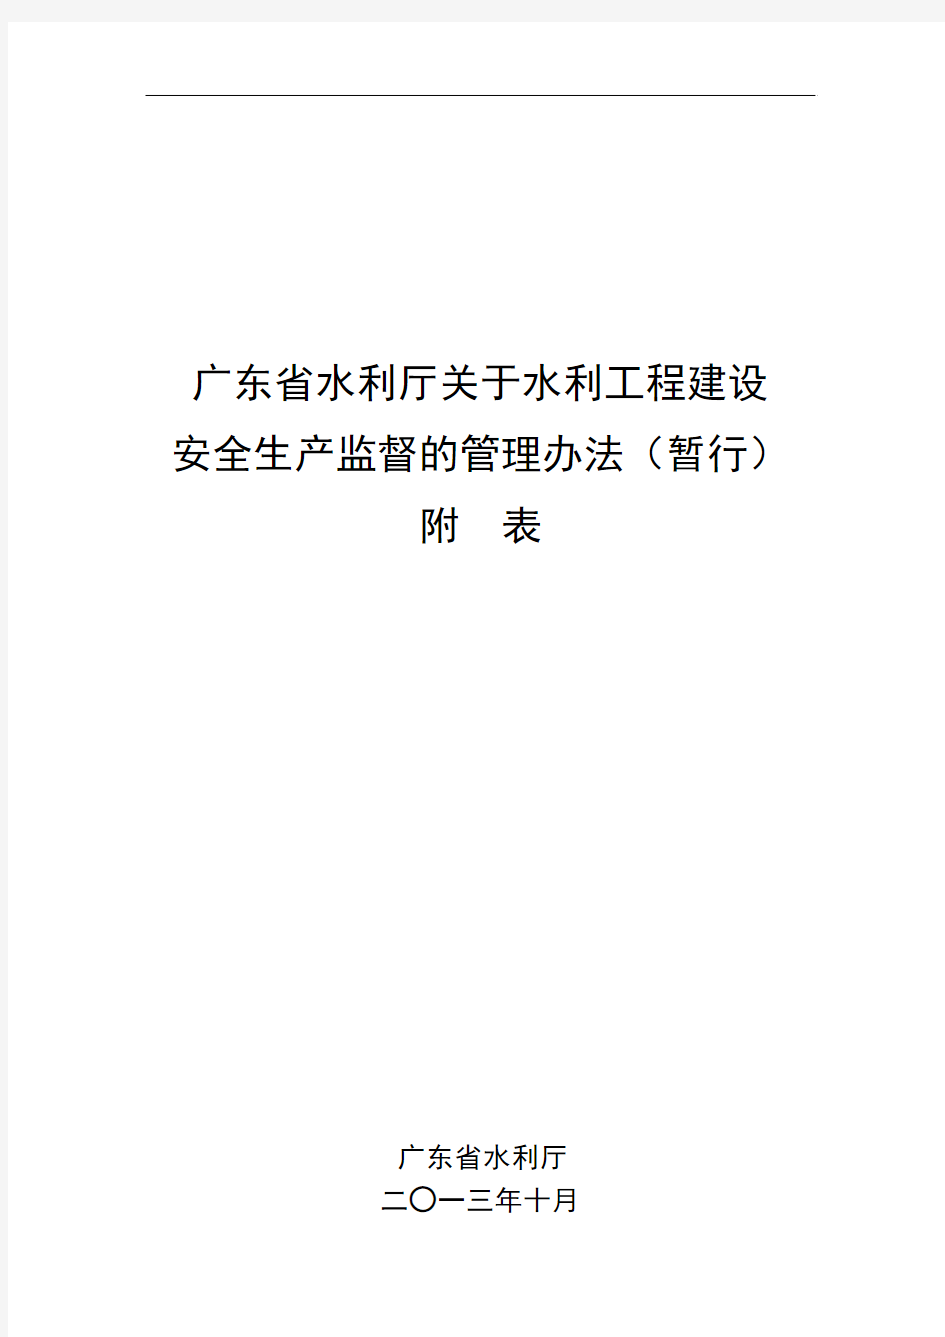 广东省水利厅关于水利工程建设安全生产监督的管理办法(暂行)附表(1725)号汇总